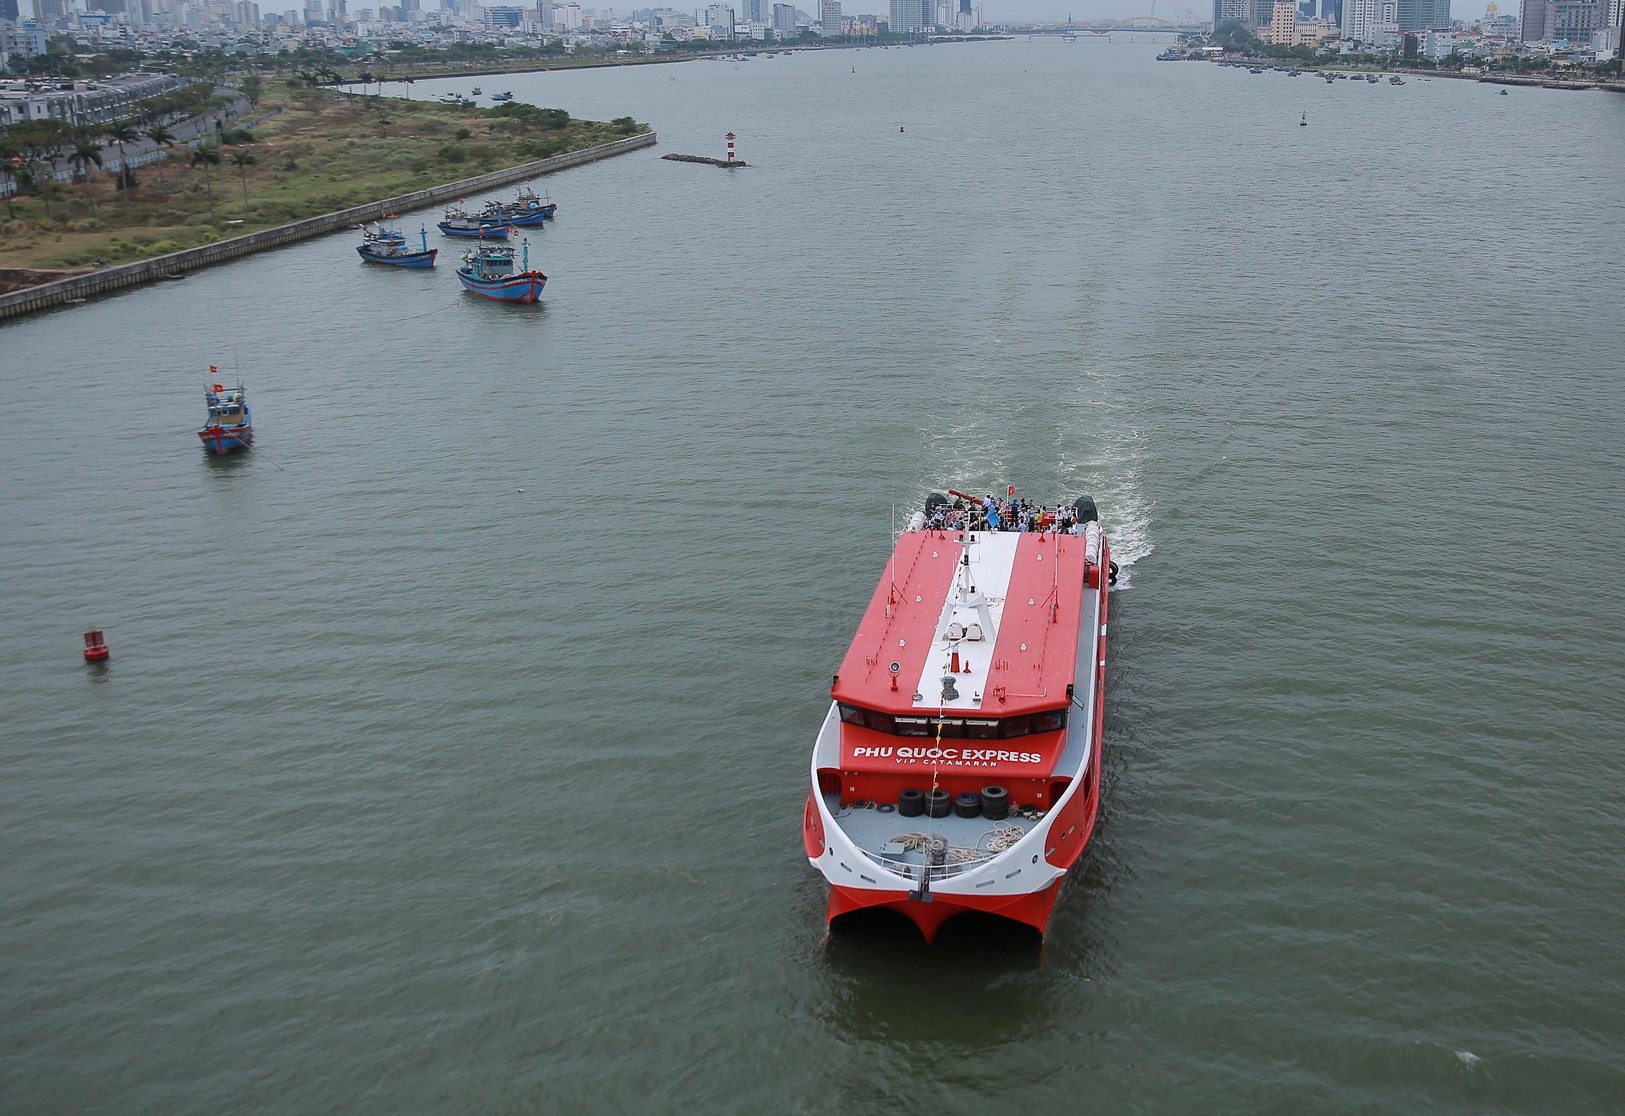 Đà Nẵng phát triển 7 tuyến du lịch đường thủy với du thuyền, khách sạn nổi - ảnh 1